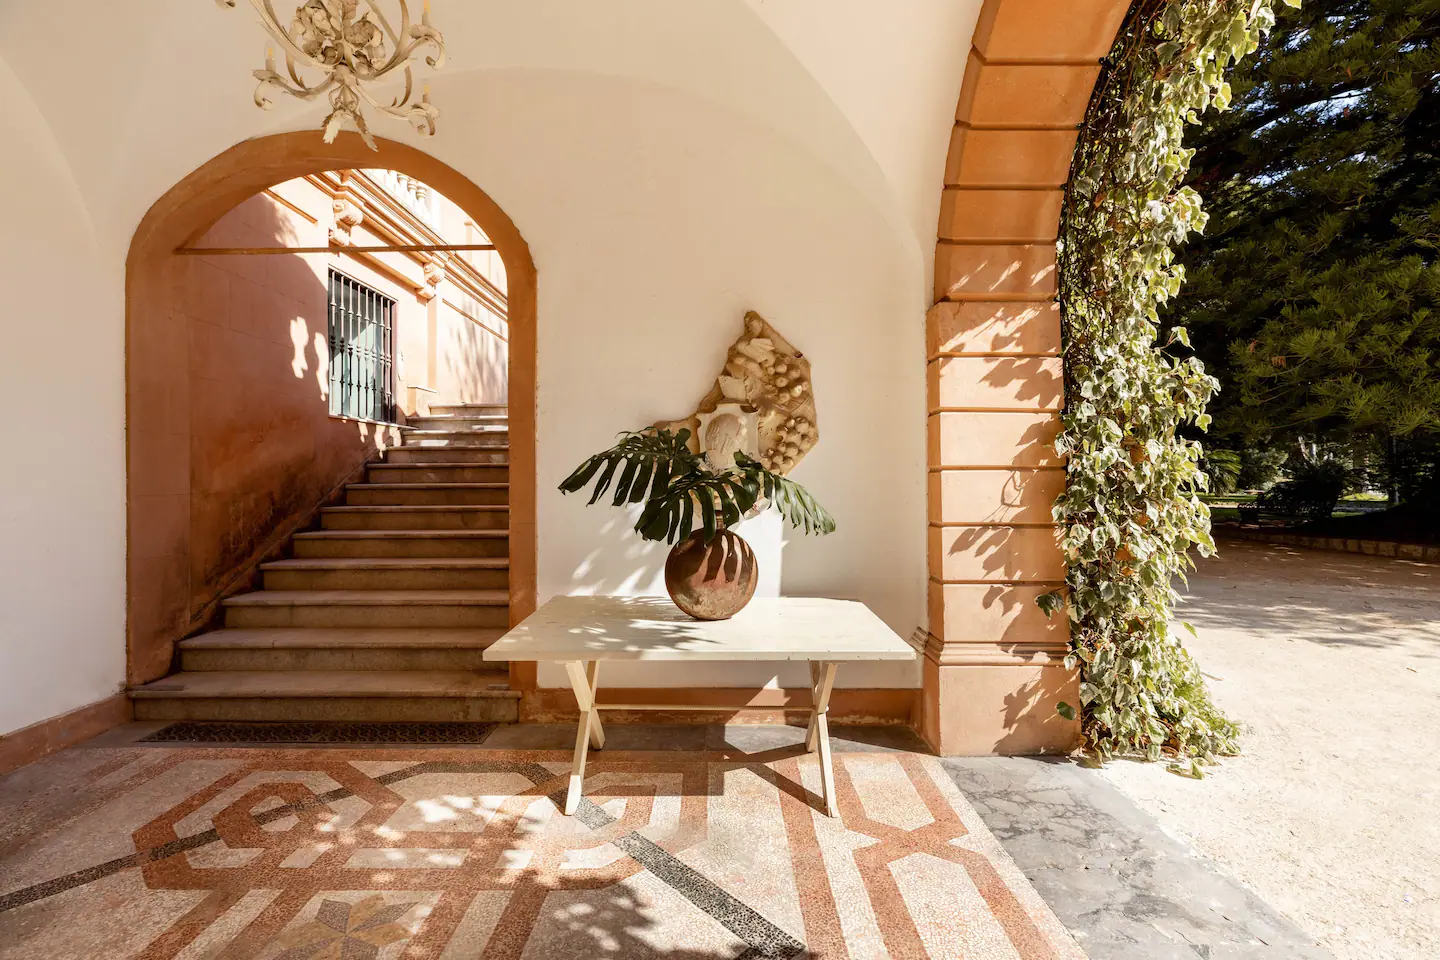 Villa Tasca, construção luxuosa vista em 'The White Lotus'. Foto: Divulgação/Airbnb 